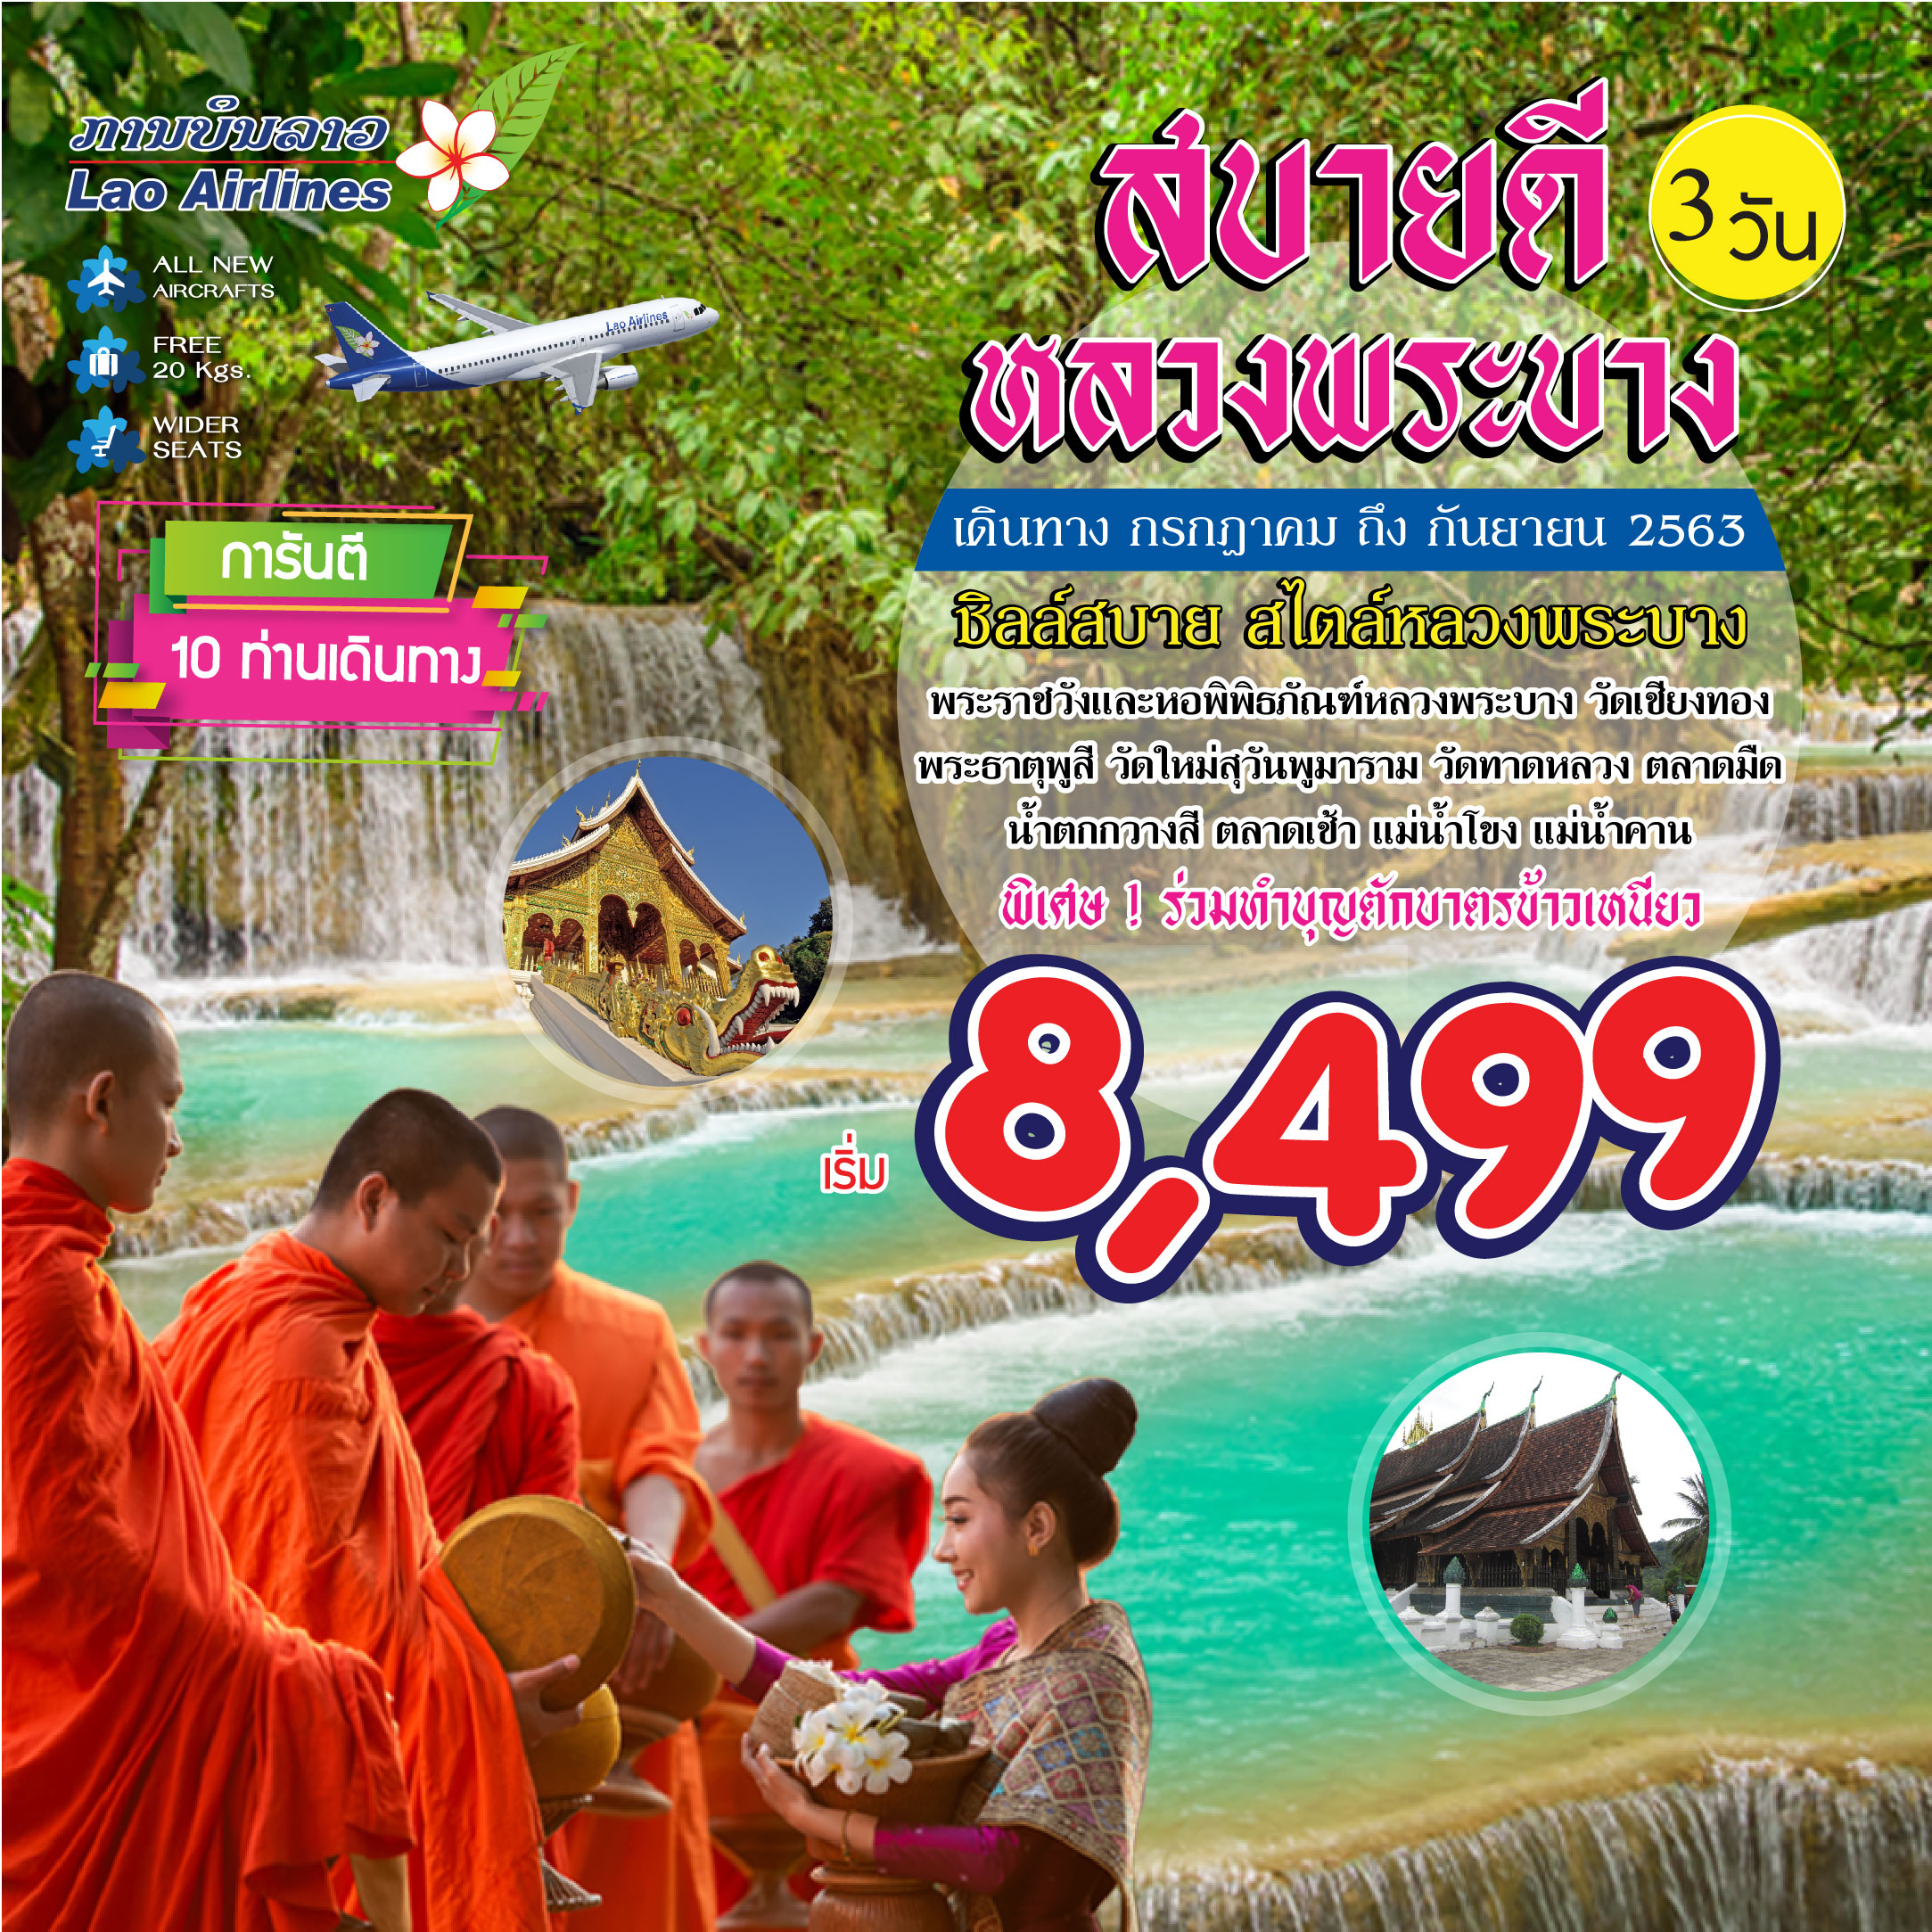 Sabaidee Luang Prabang_3D_Jul-Sep20 1040-01